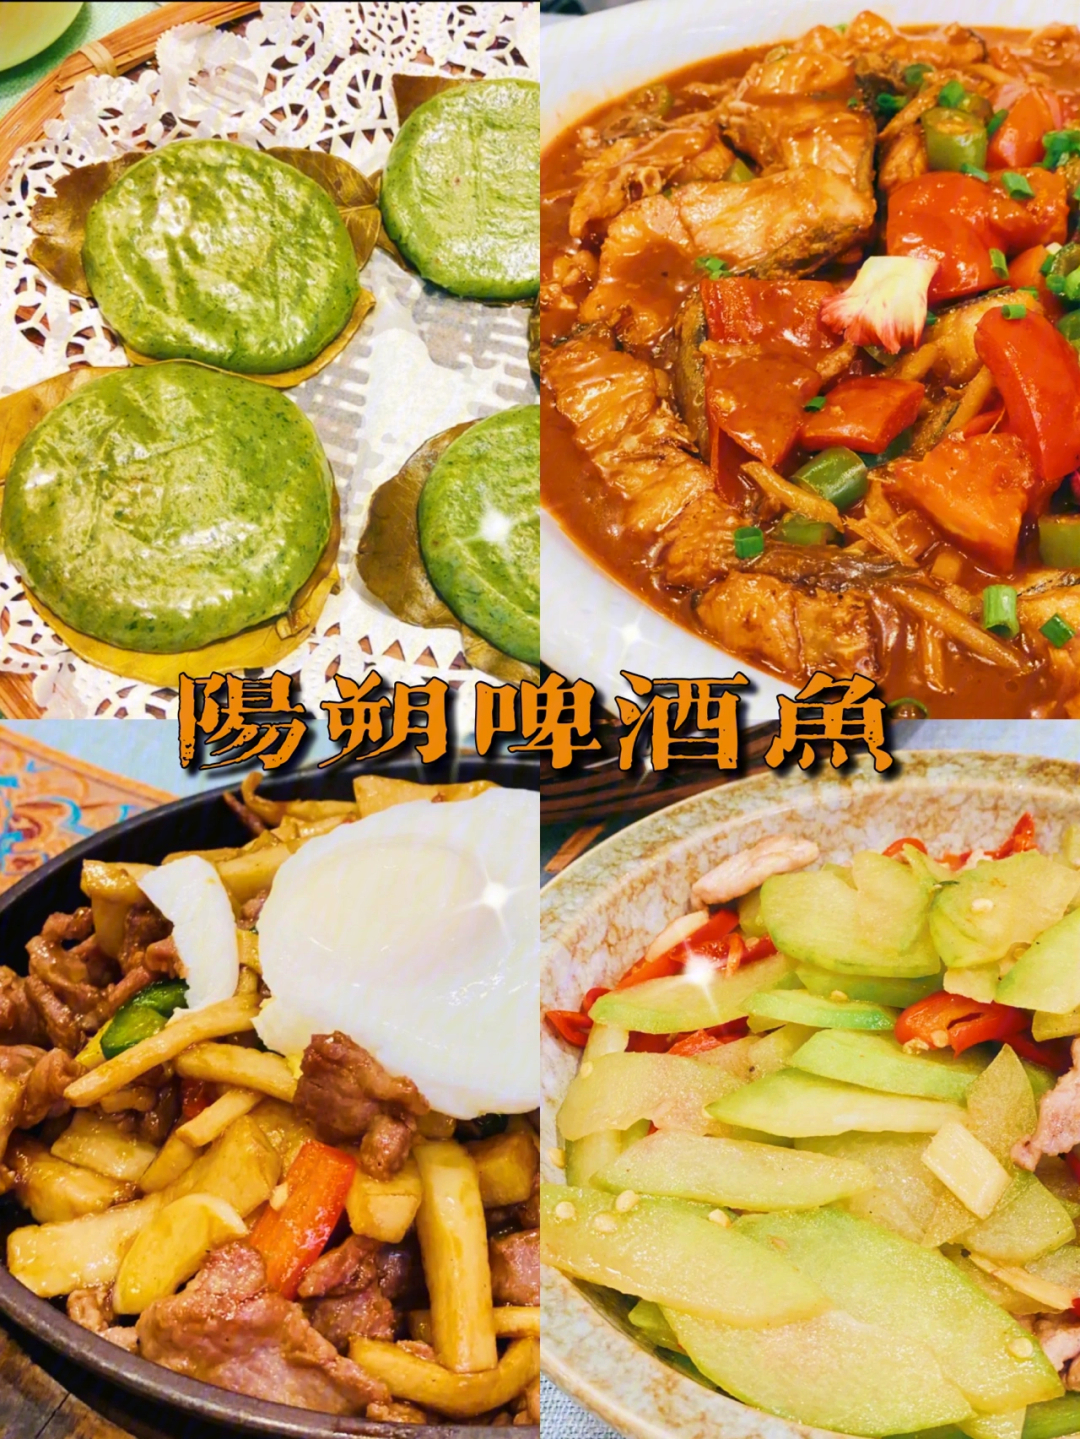 桂林美食丨满大街都是的阳朔啤酒鱼